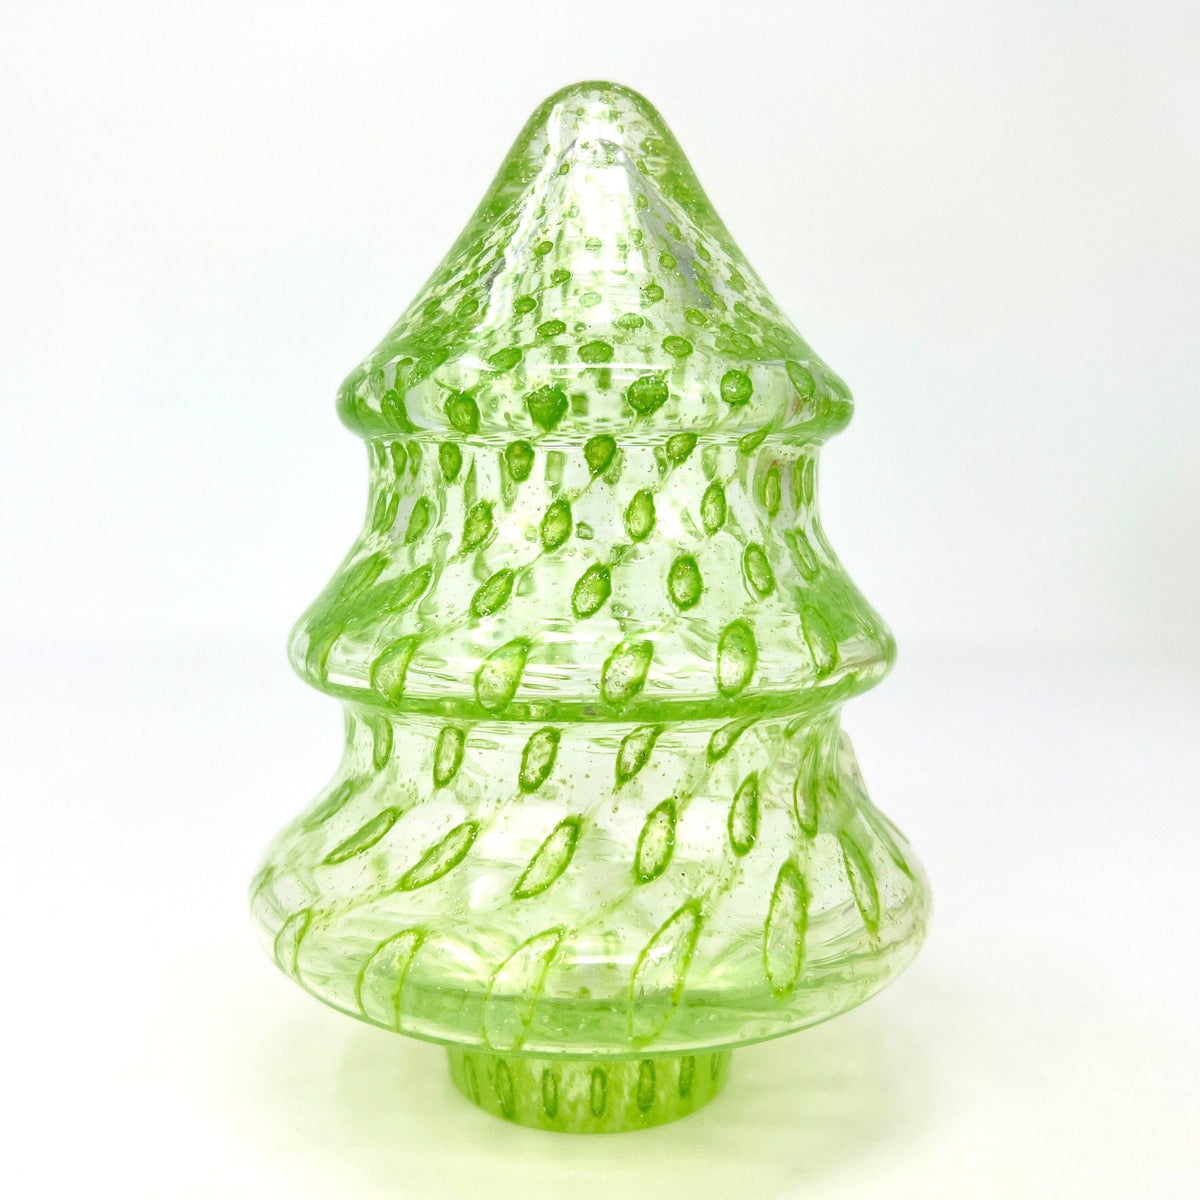 Murano Glass Forza Tree, Handmade, Made in Italy at MyItalianDecor